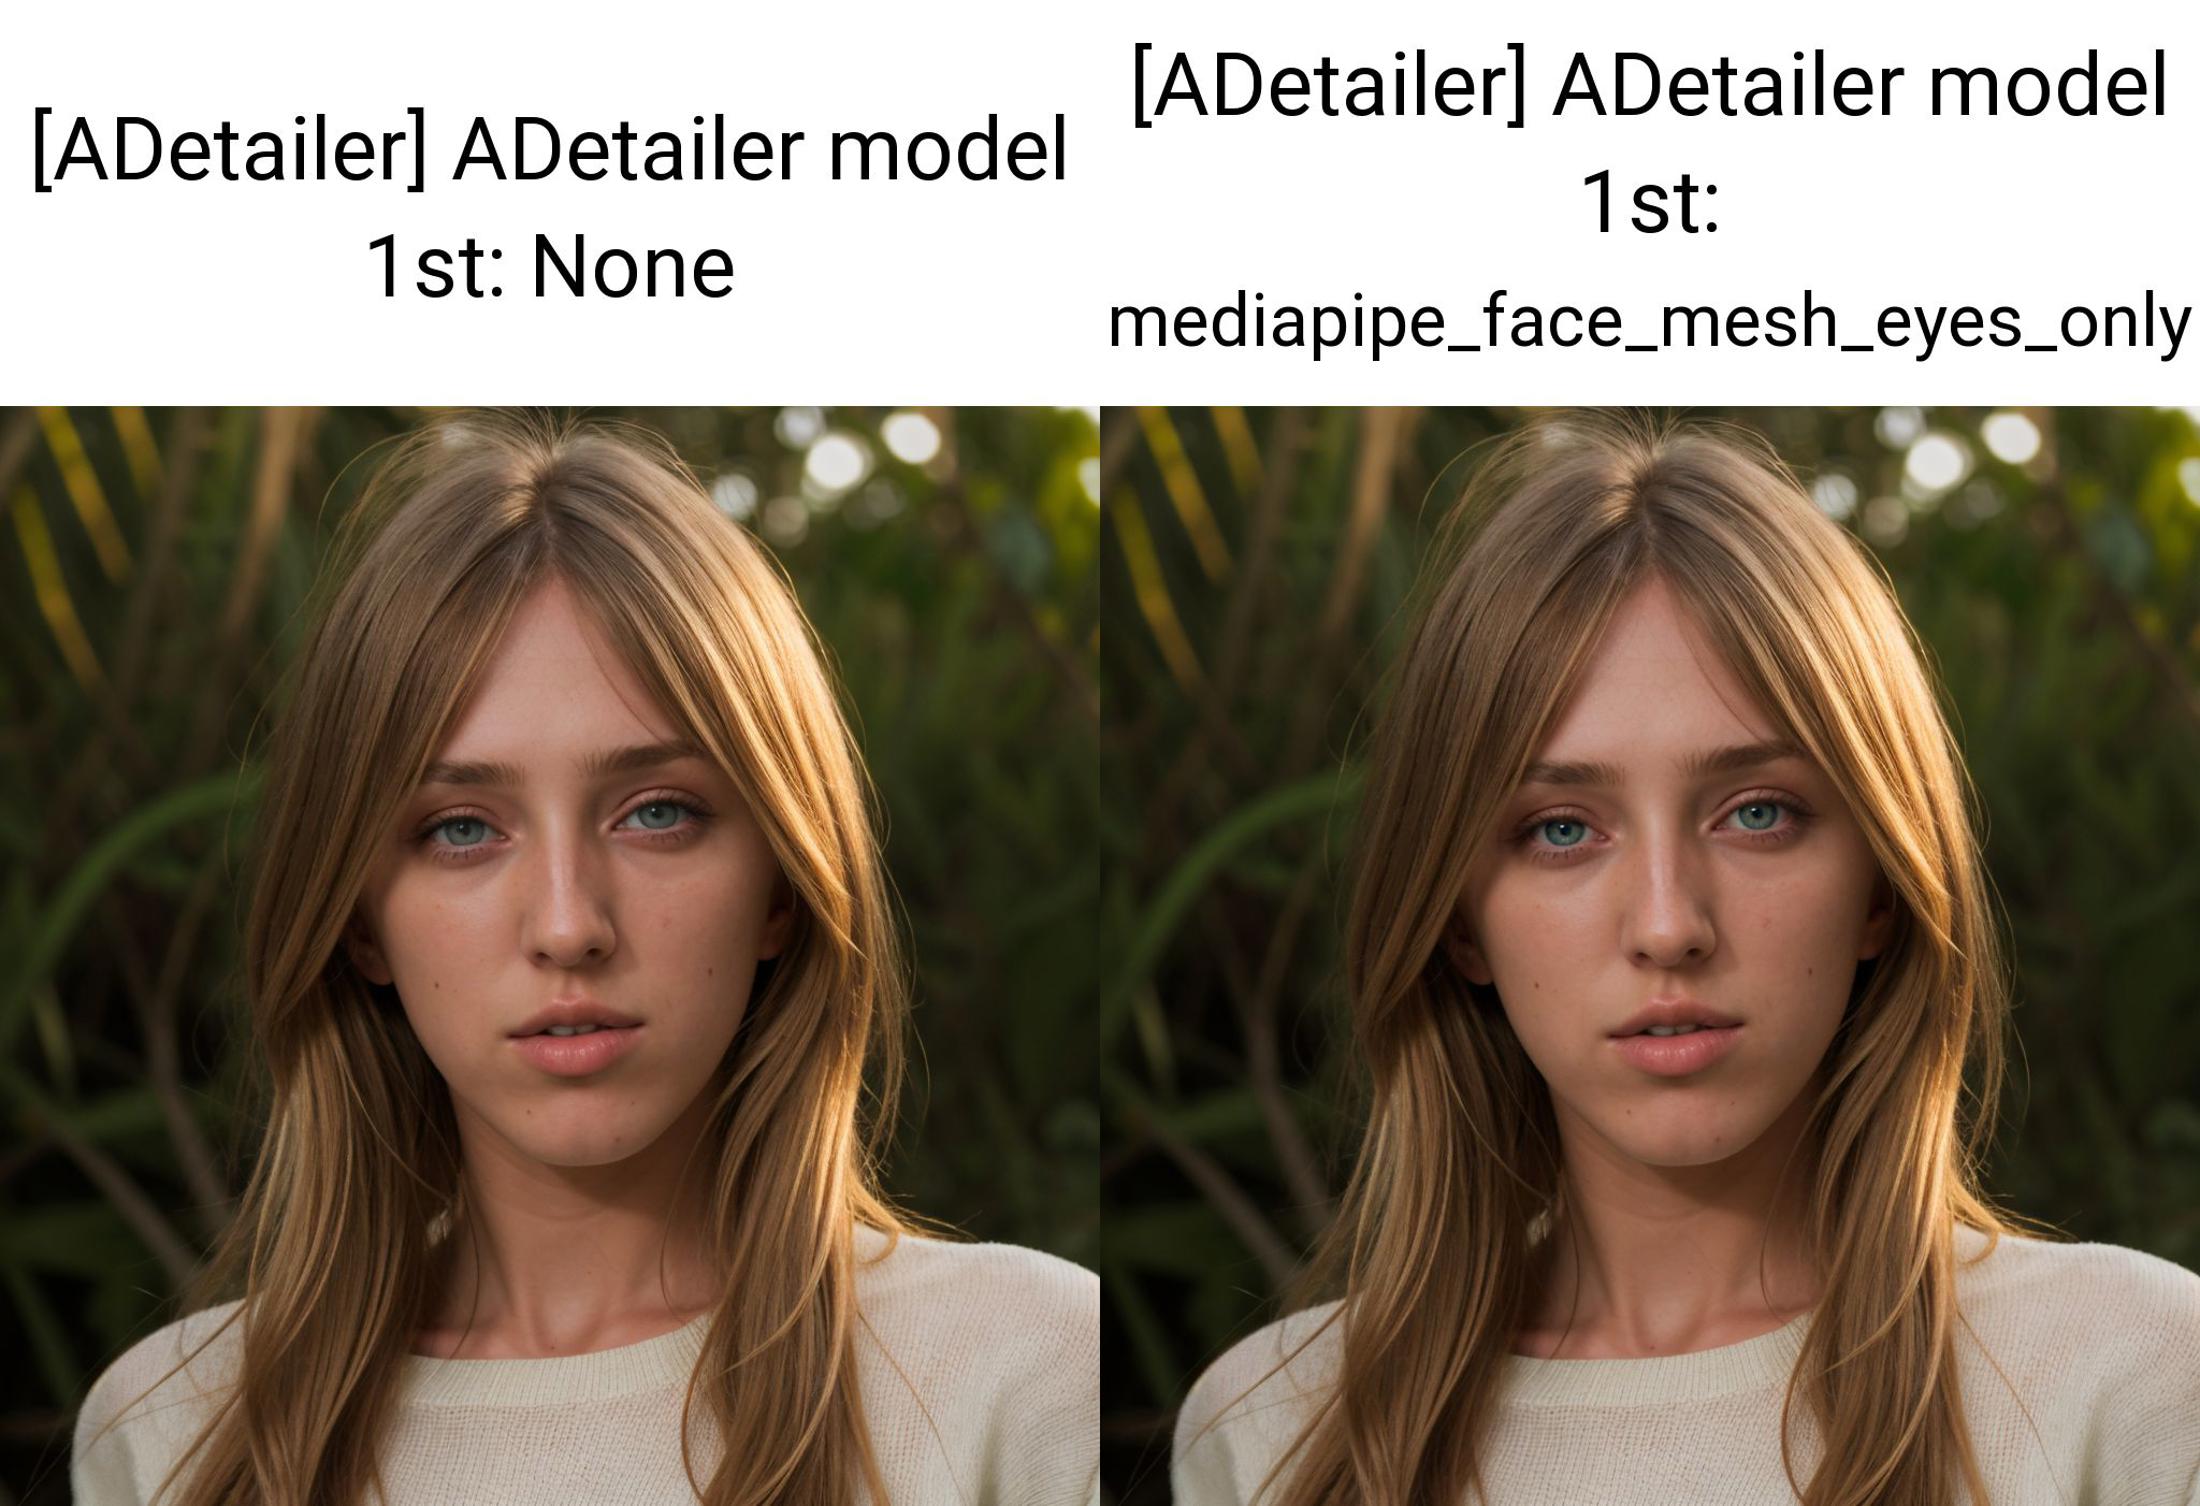 AI model image by Daggoth